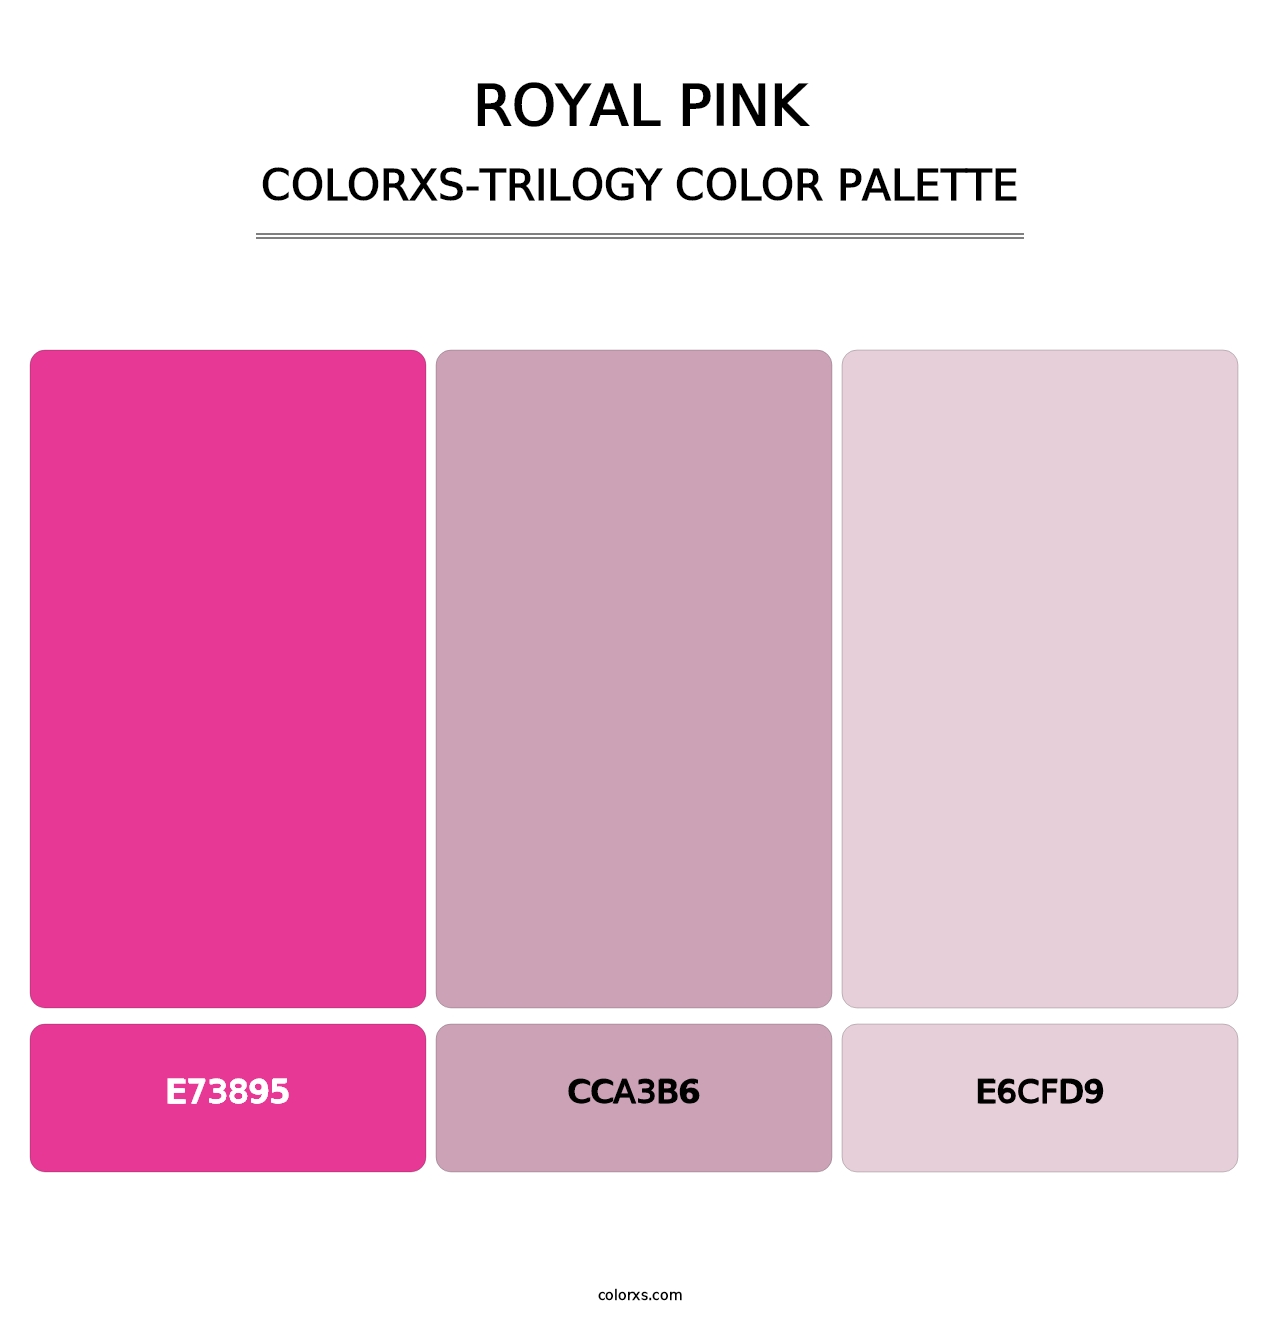 Royal Pink - Colorxs Trilogy Palette